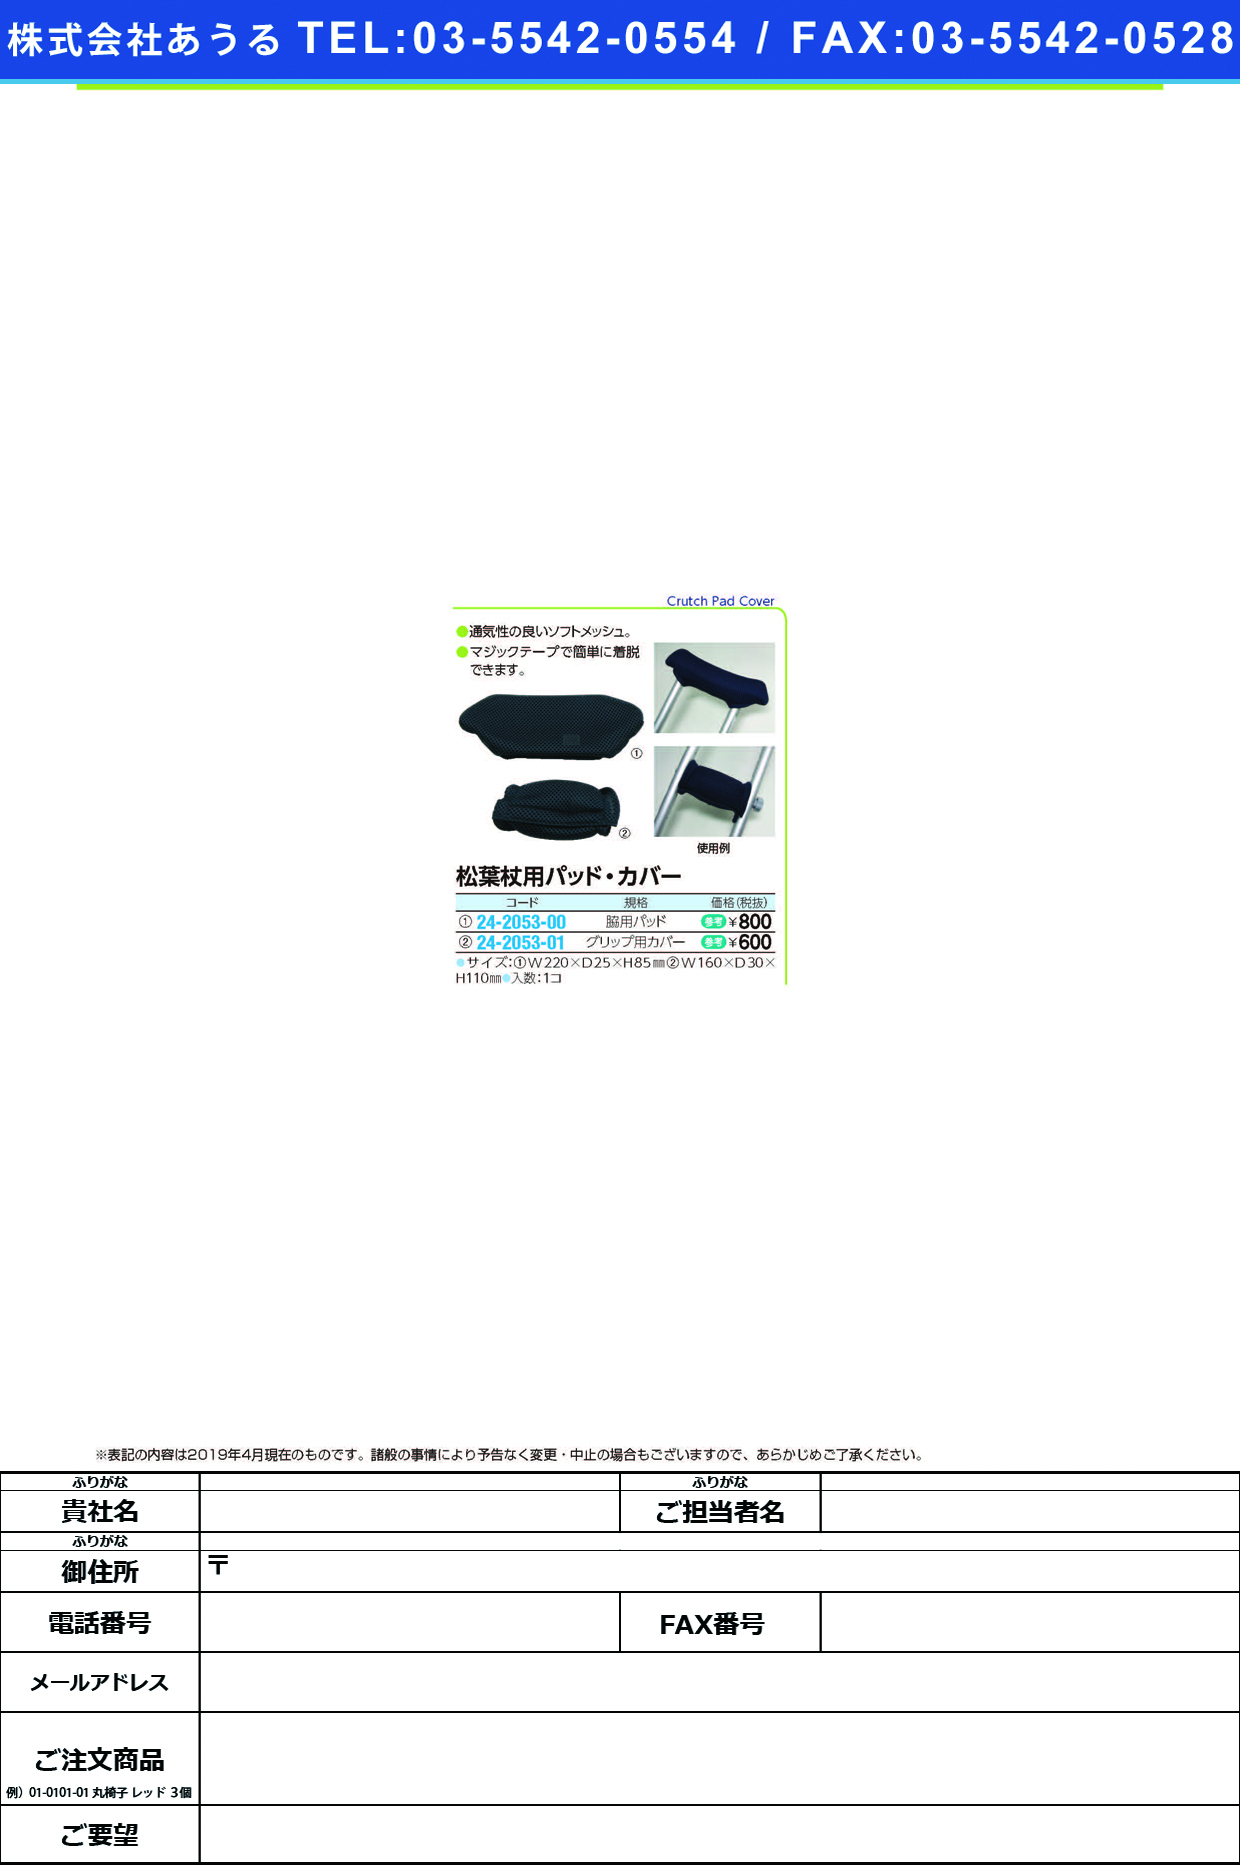 (24-2053-00)松葉杖用脇パッドカバー 1ｺｲﾘ ﾏﾂﾊﾞﾂﾞｴﾖｳﾜｷﾊﾟｯﾄﾞｶﾊﾞｰ【1個単位】【2019年カタログ商品】